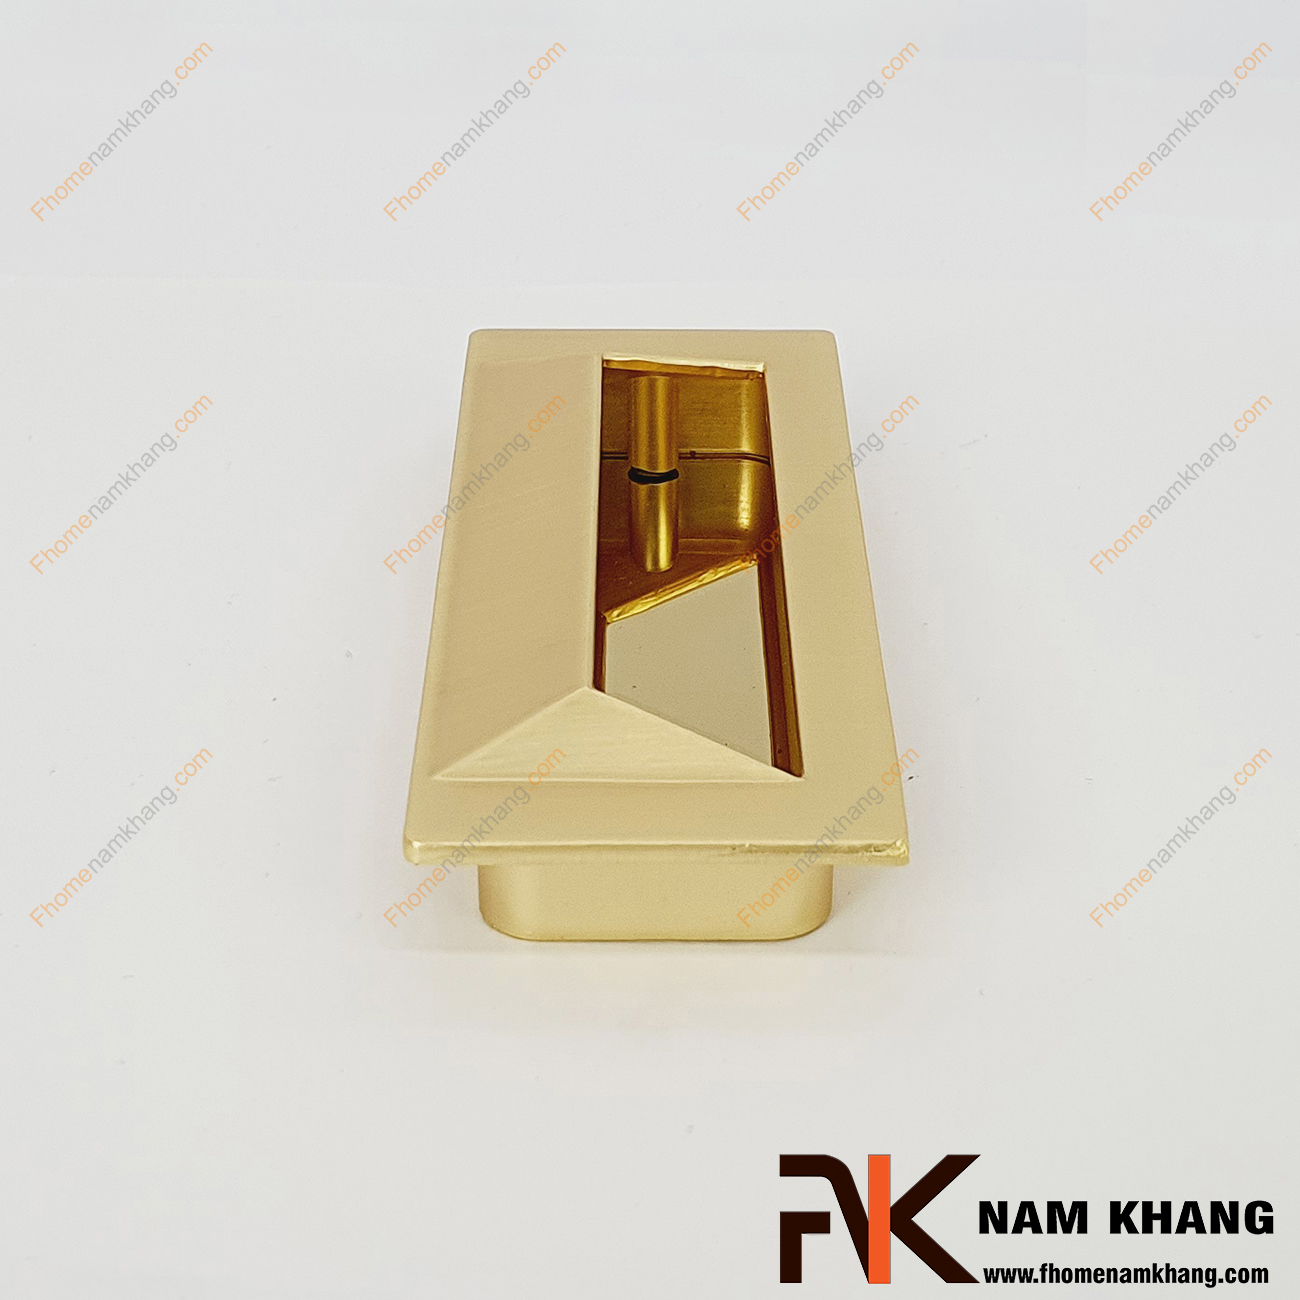 Tay nắm âm tủ dạng trơn màu vàng mờ NK223-VM là loại tay nắm chuyên dùng cho các loại tủ đặt ở những nơi có không gian hạn chế hoặc dùng để nâng cao tính thẫm mỹ của sản phẩm